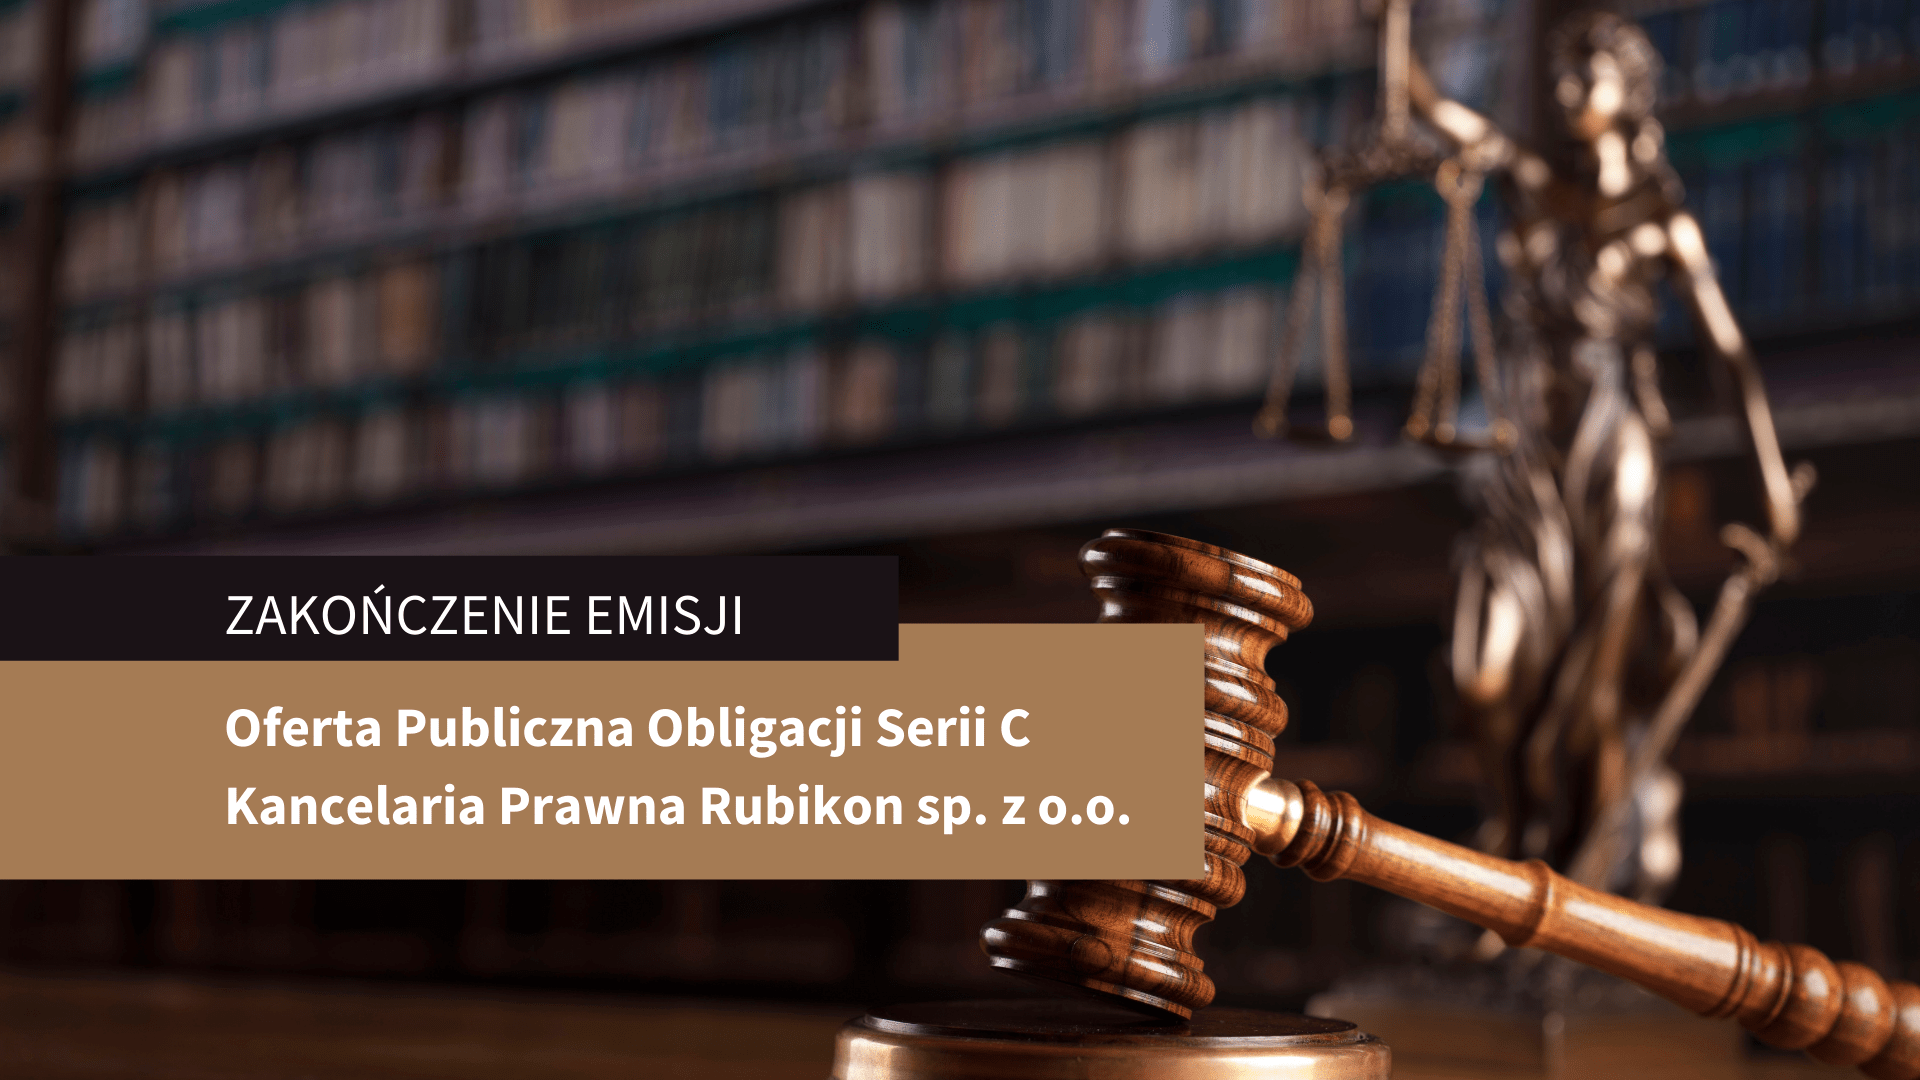 Zakończenie Oferty Publicznej Obligacji Serii C Kancelarii Prawnej Rubikon sp. z o.o.